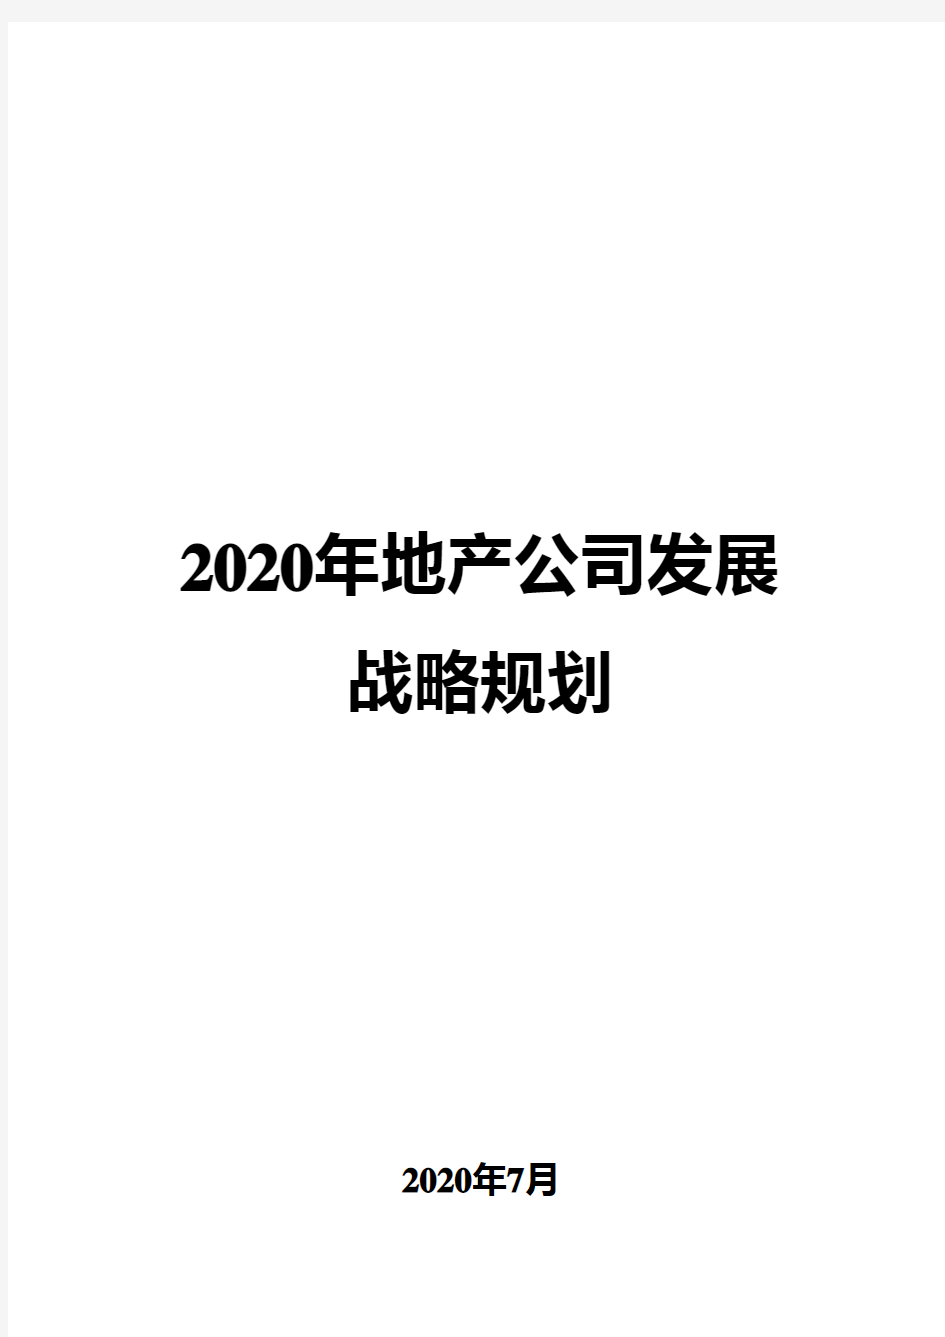 2020年地产公司发展战略规划